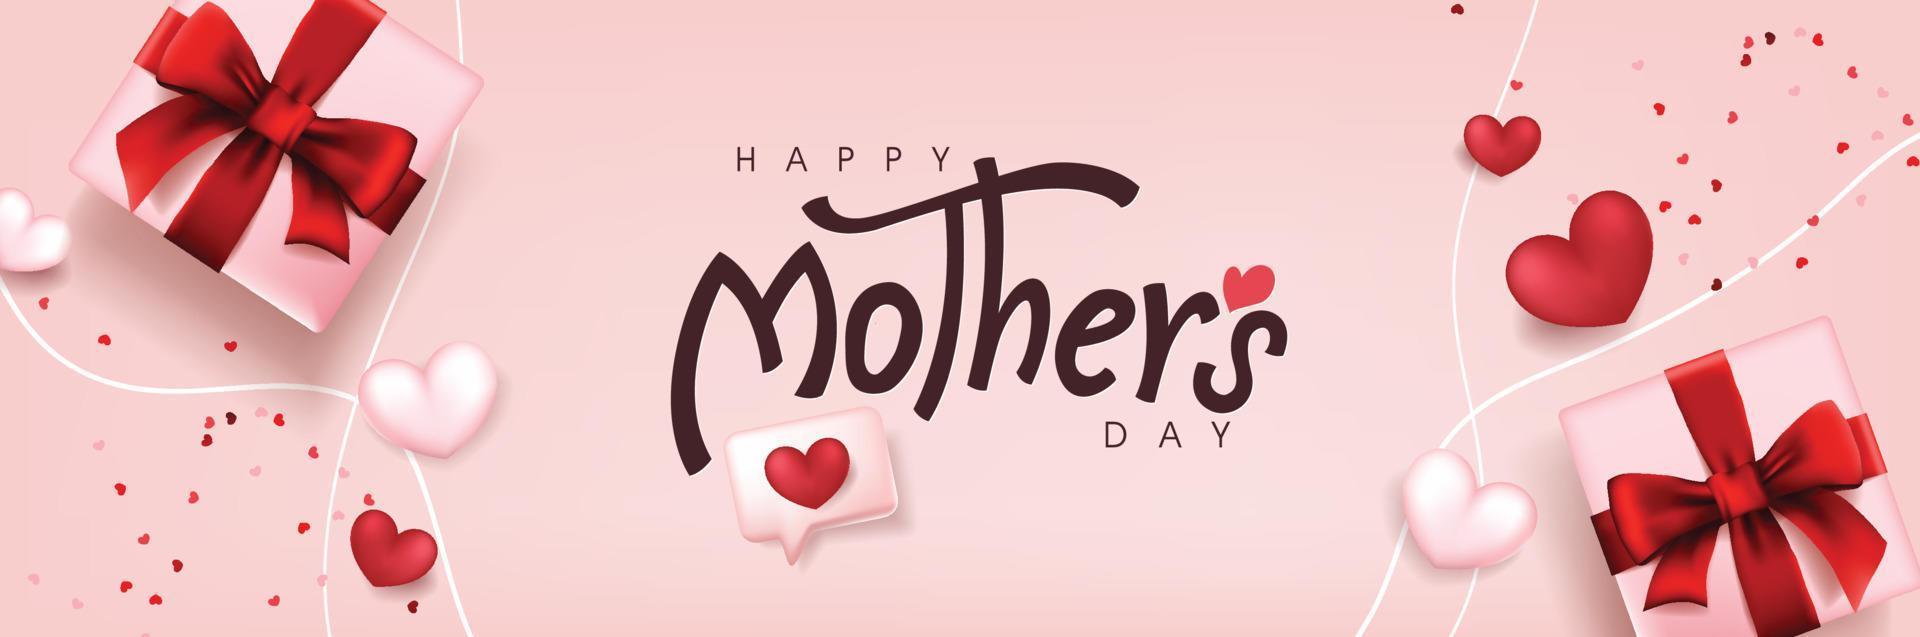 diseño de fondo de banner de póster del día de la madre con caja de regalo y globos en forma de corazón vector